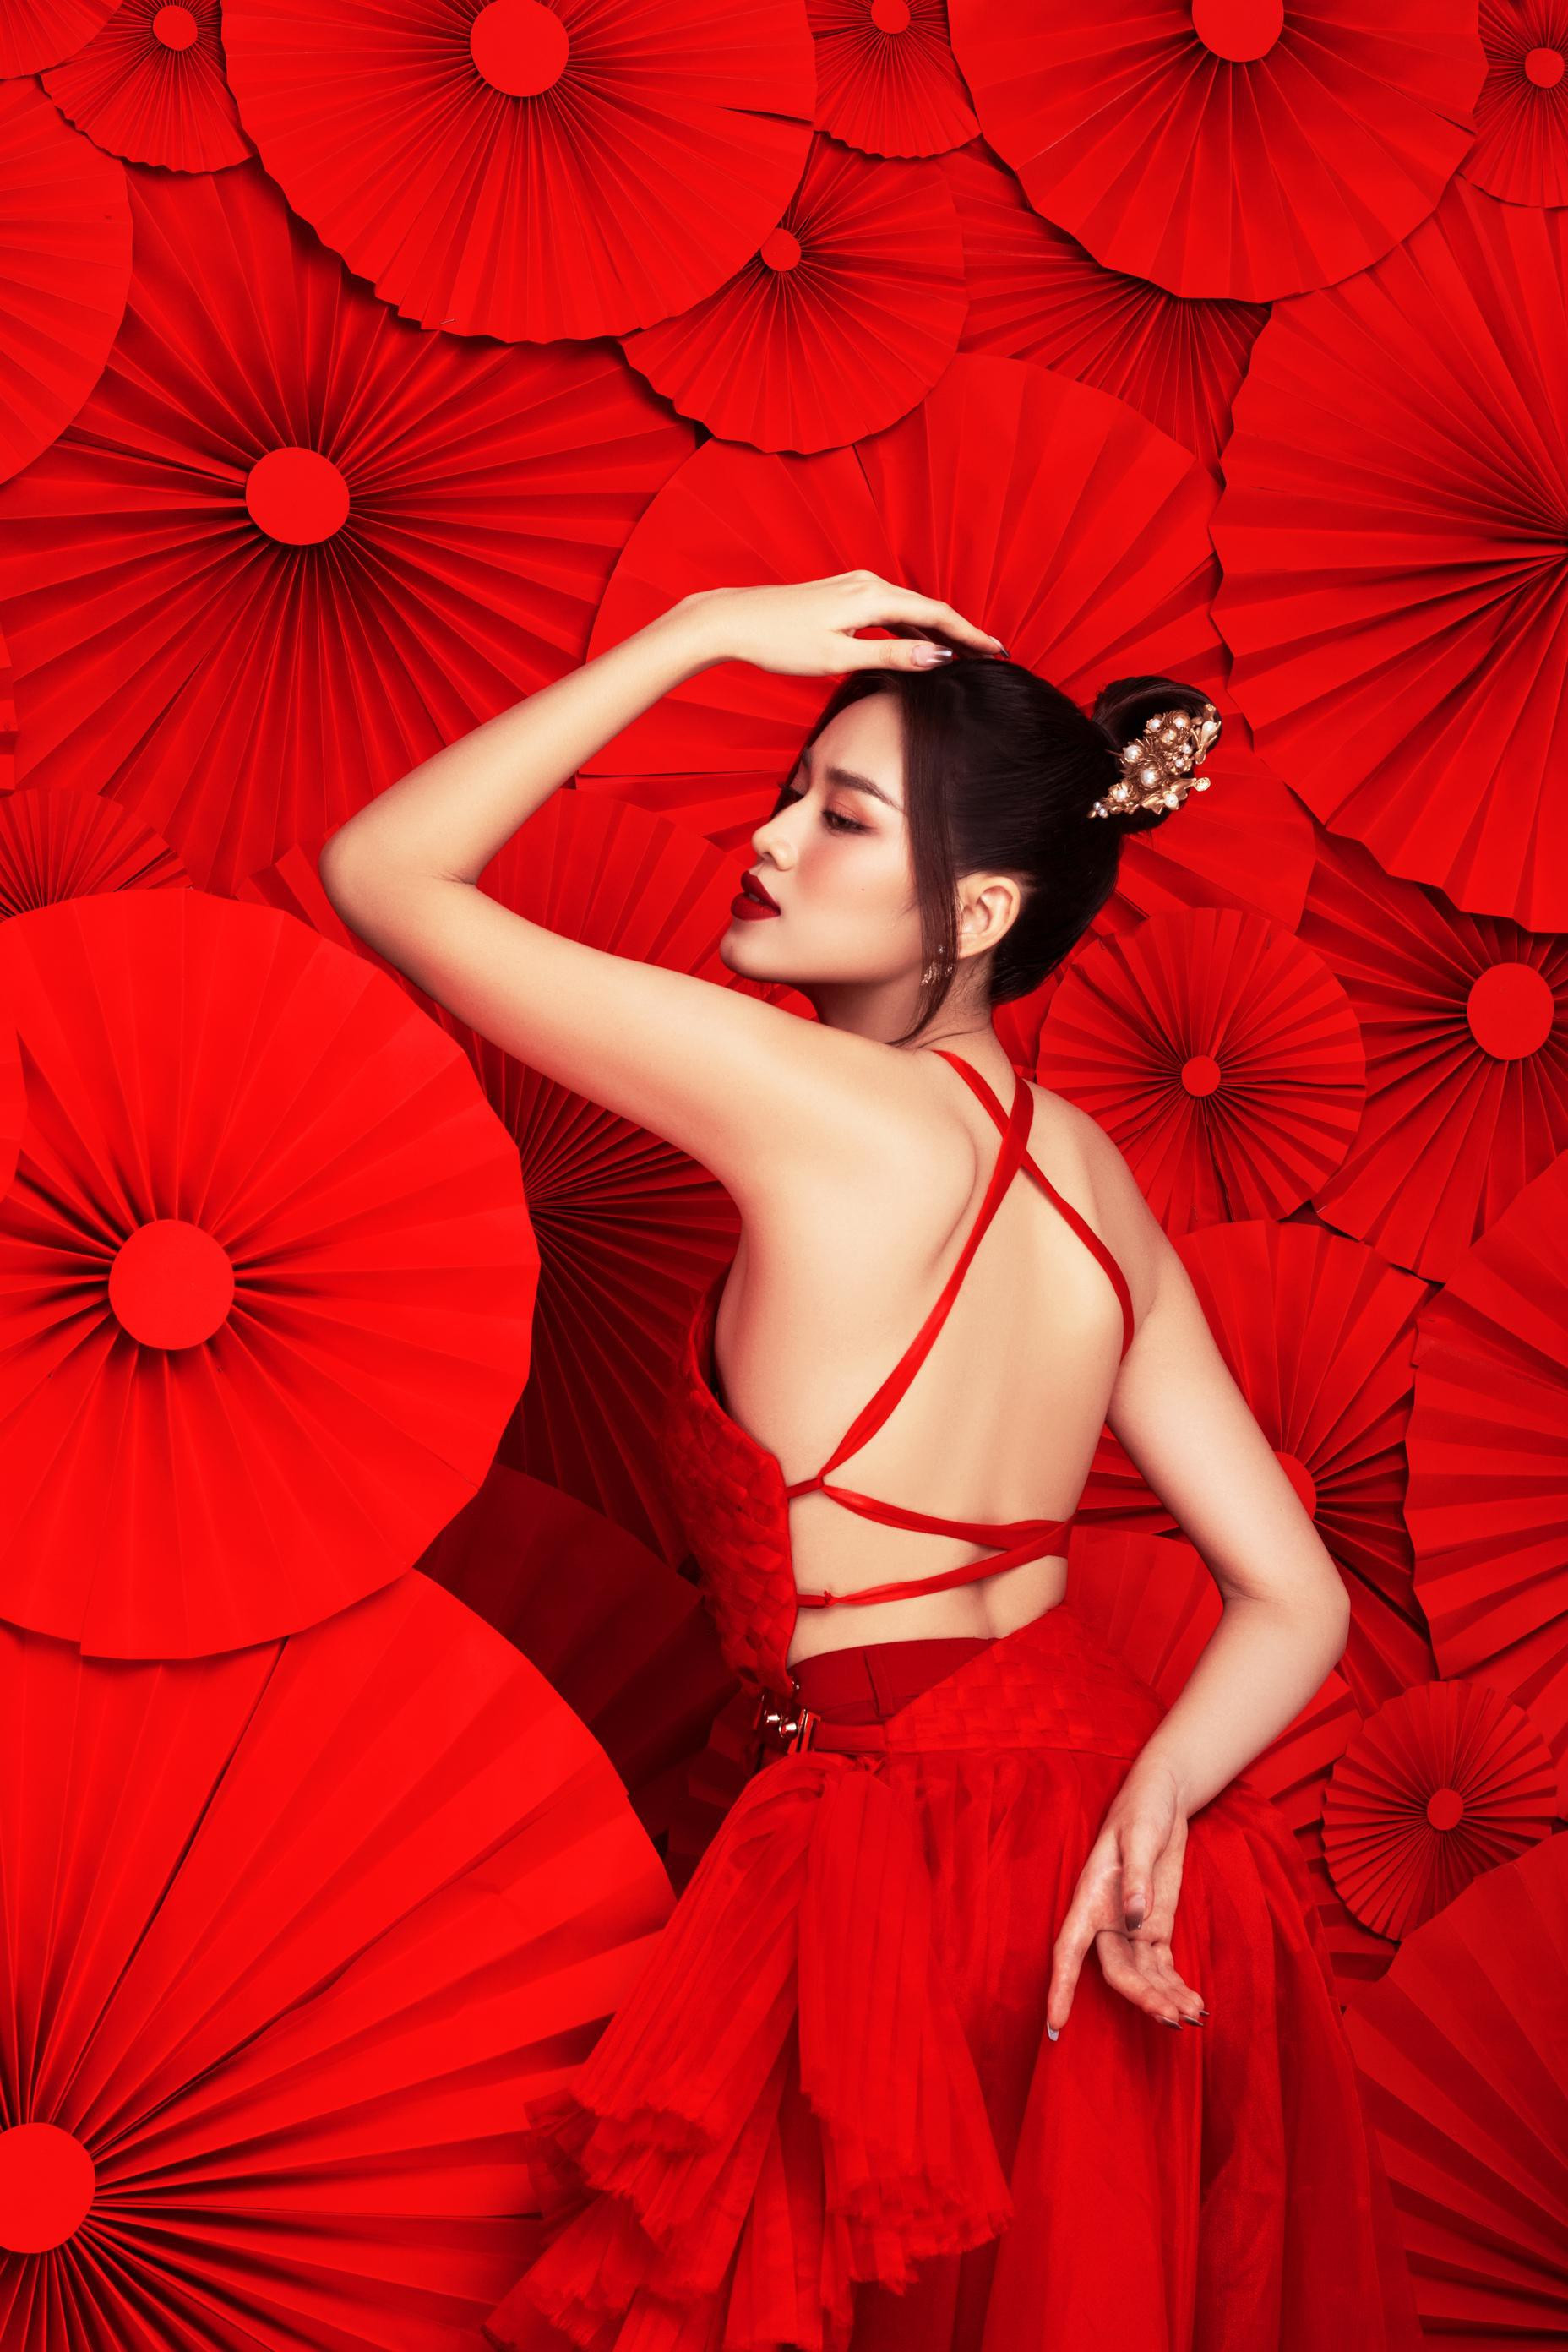 Hoa hậu Đỗ Thị Hà diện yếm đỏ, khoe lưng trần gợi cảm trong bộ ảnh Tết ảnh 3